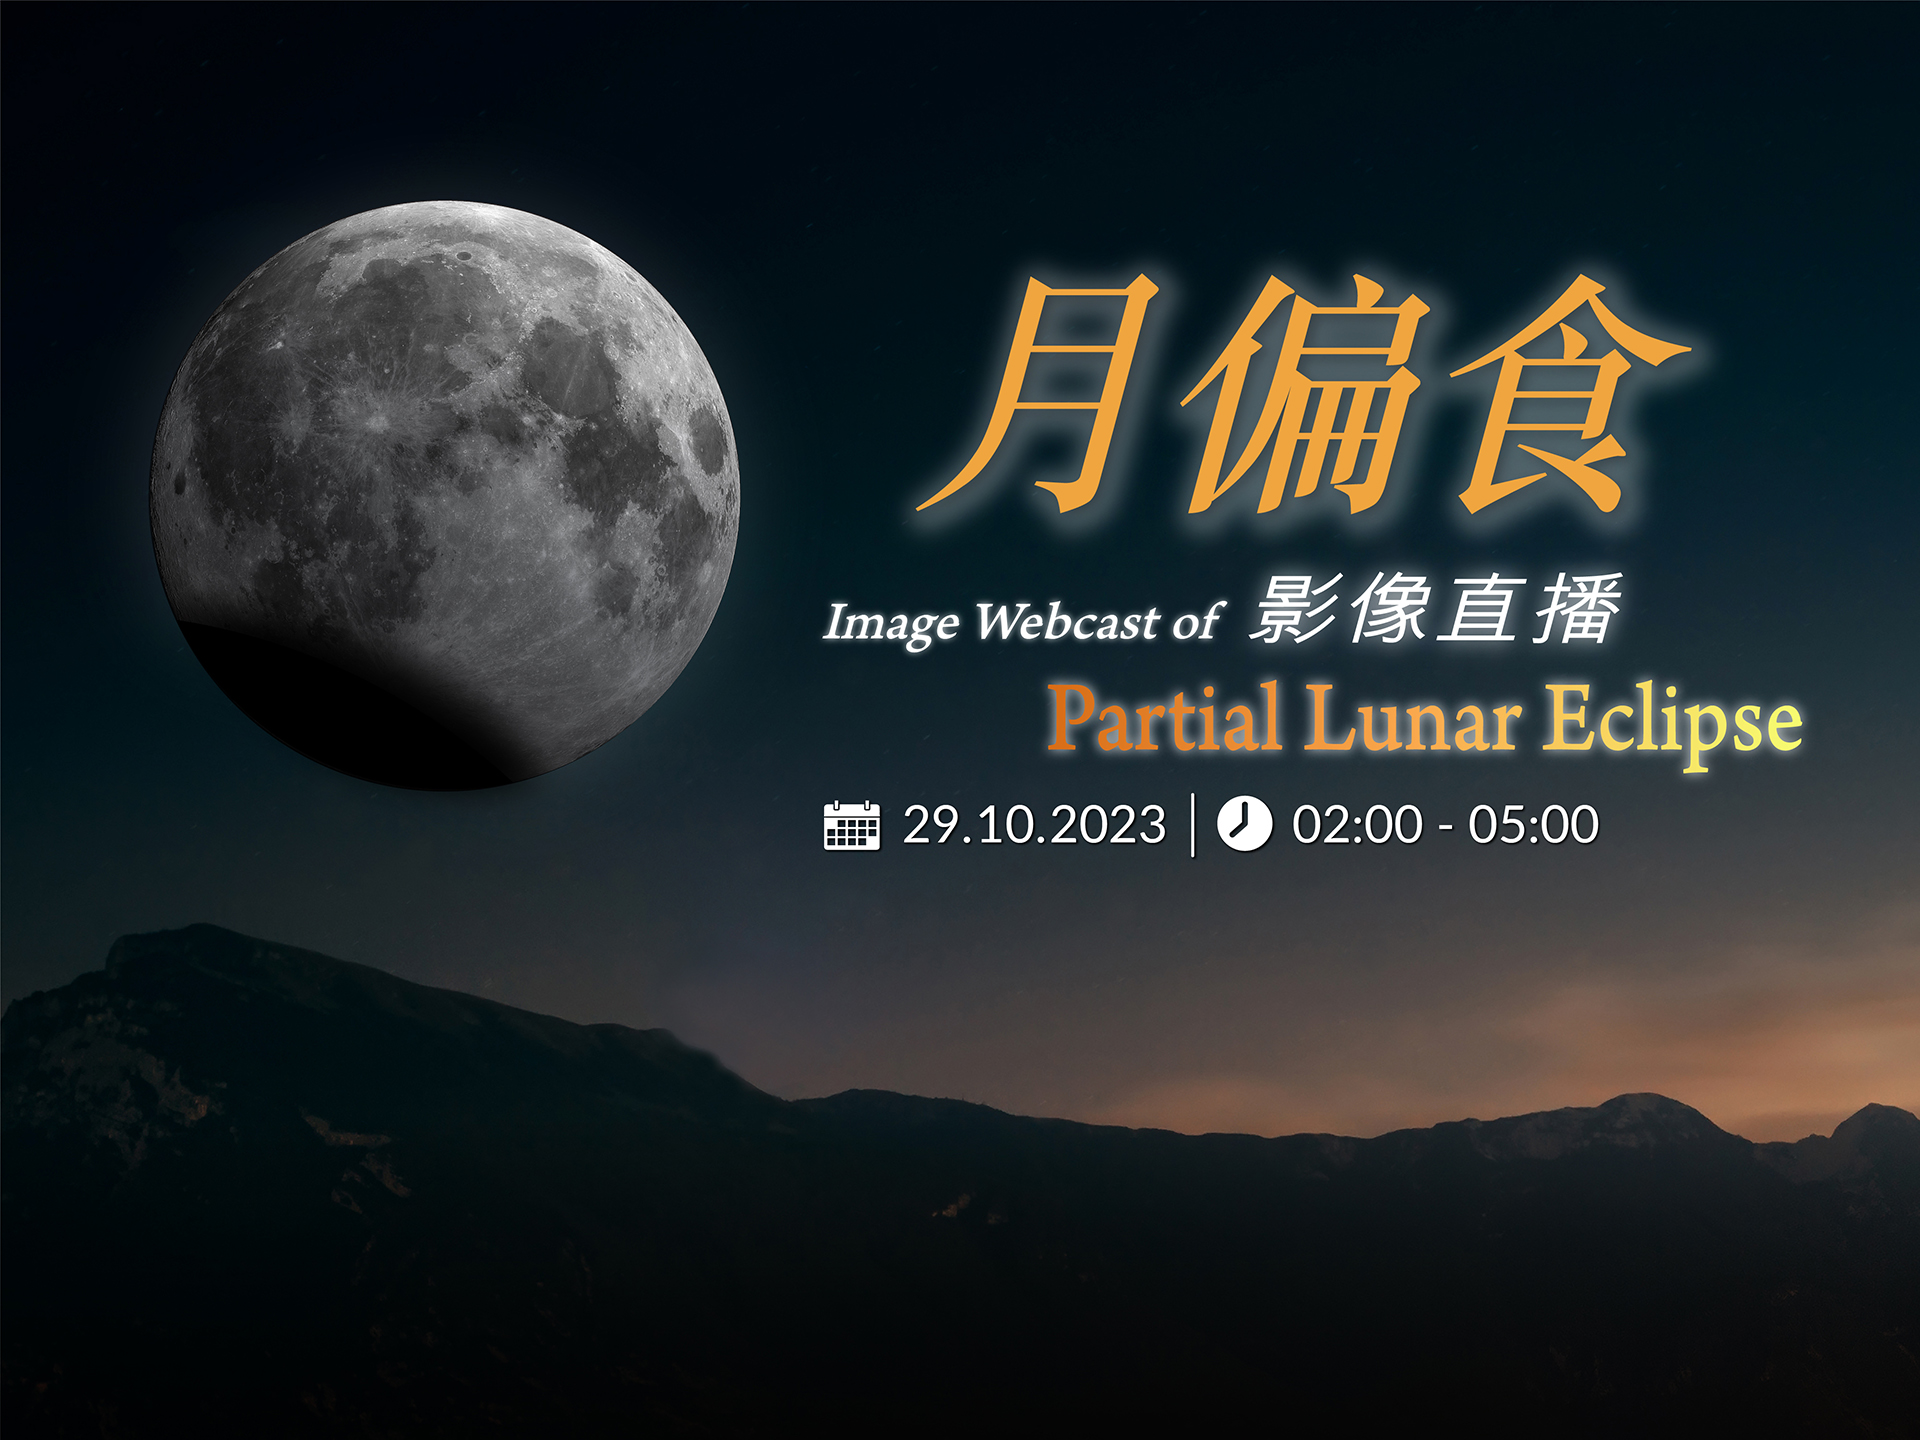 Image Webcast of Partial Lunar Eclipse